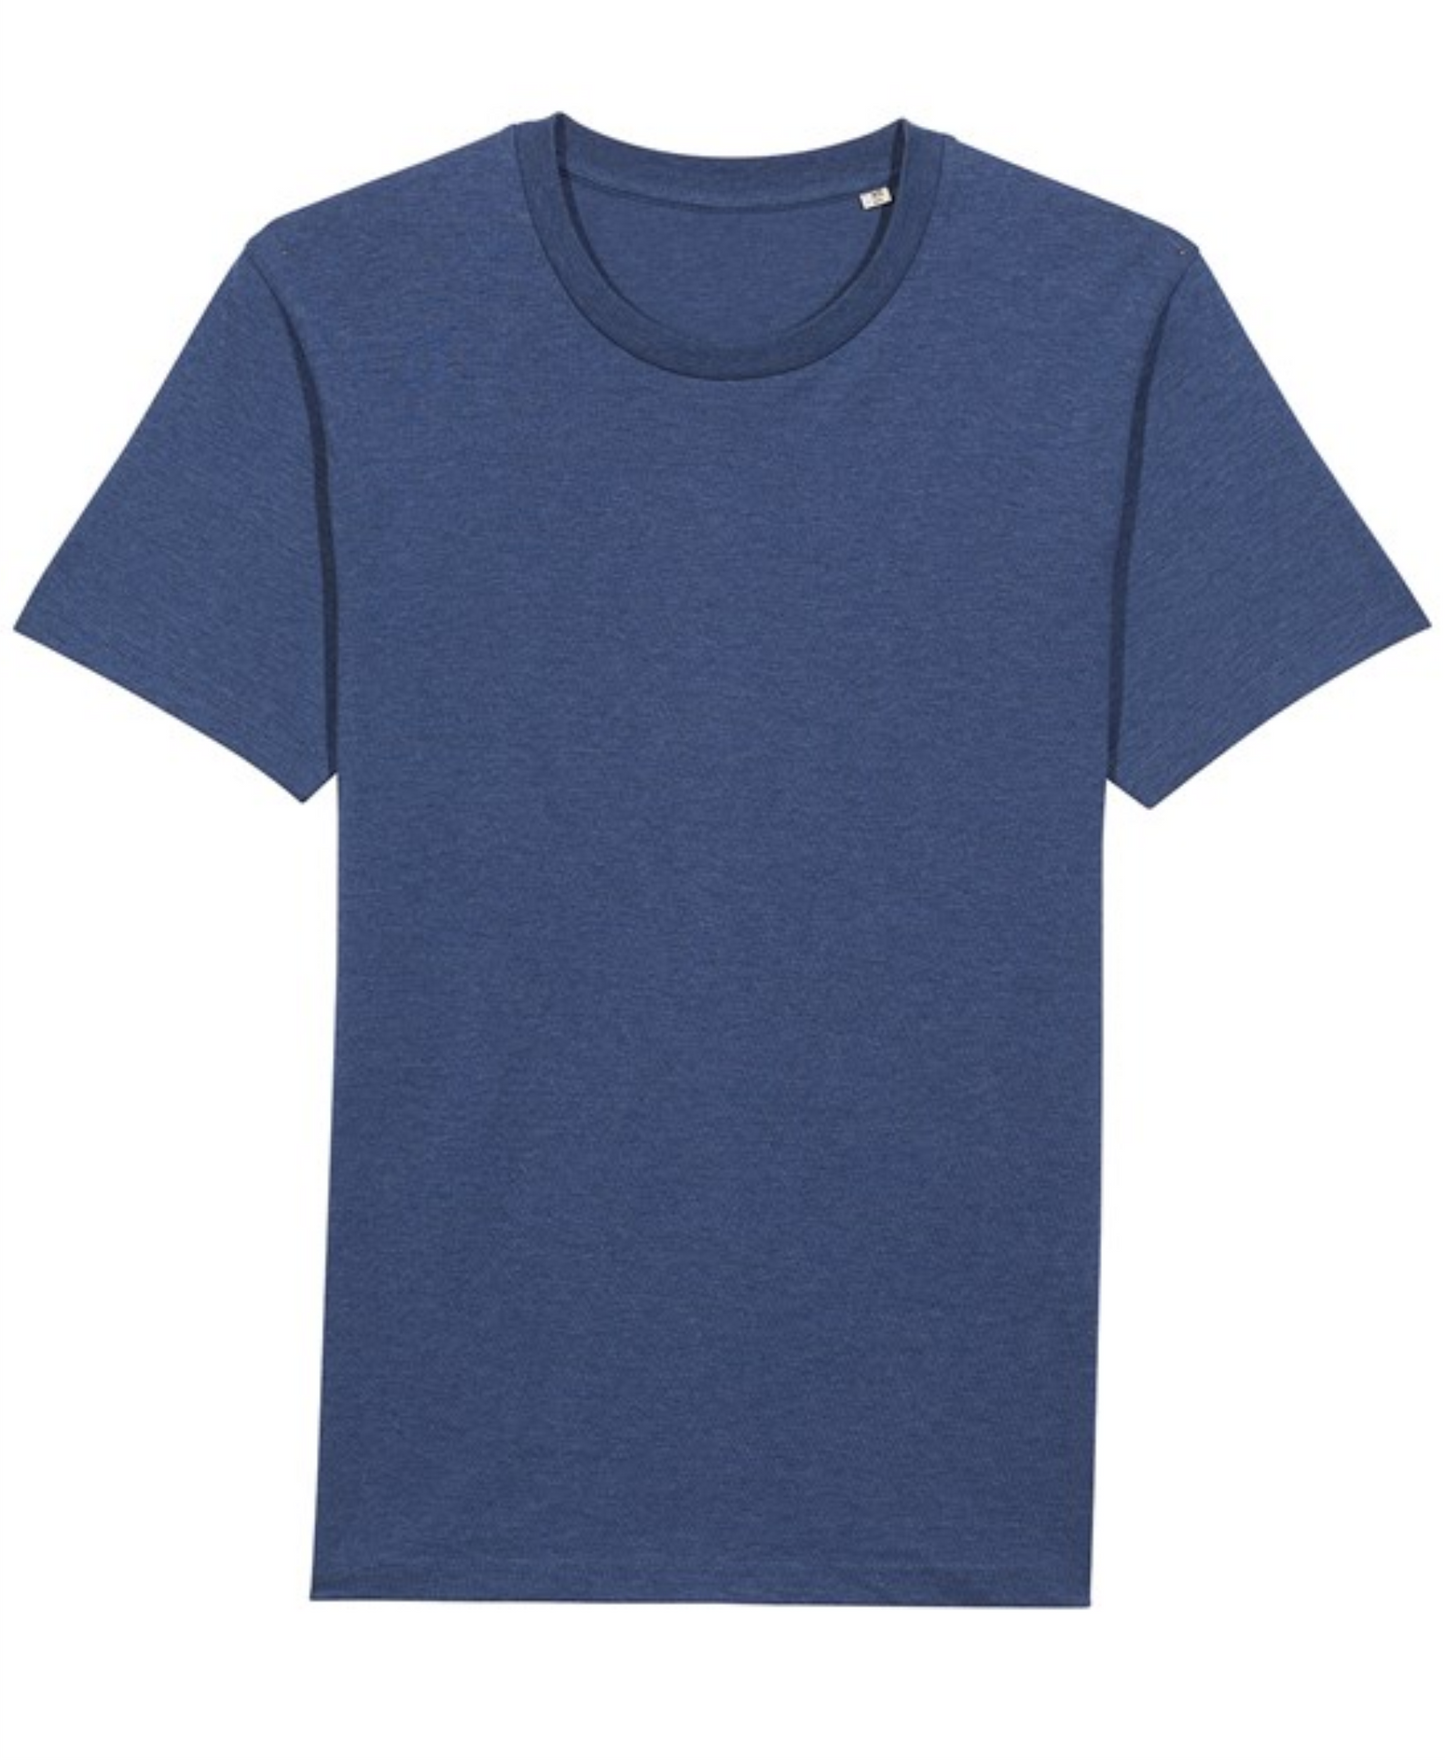 Stanley/Stella Rocker essential unisex t-shirt